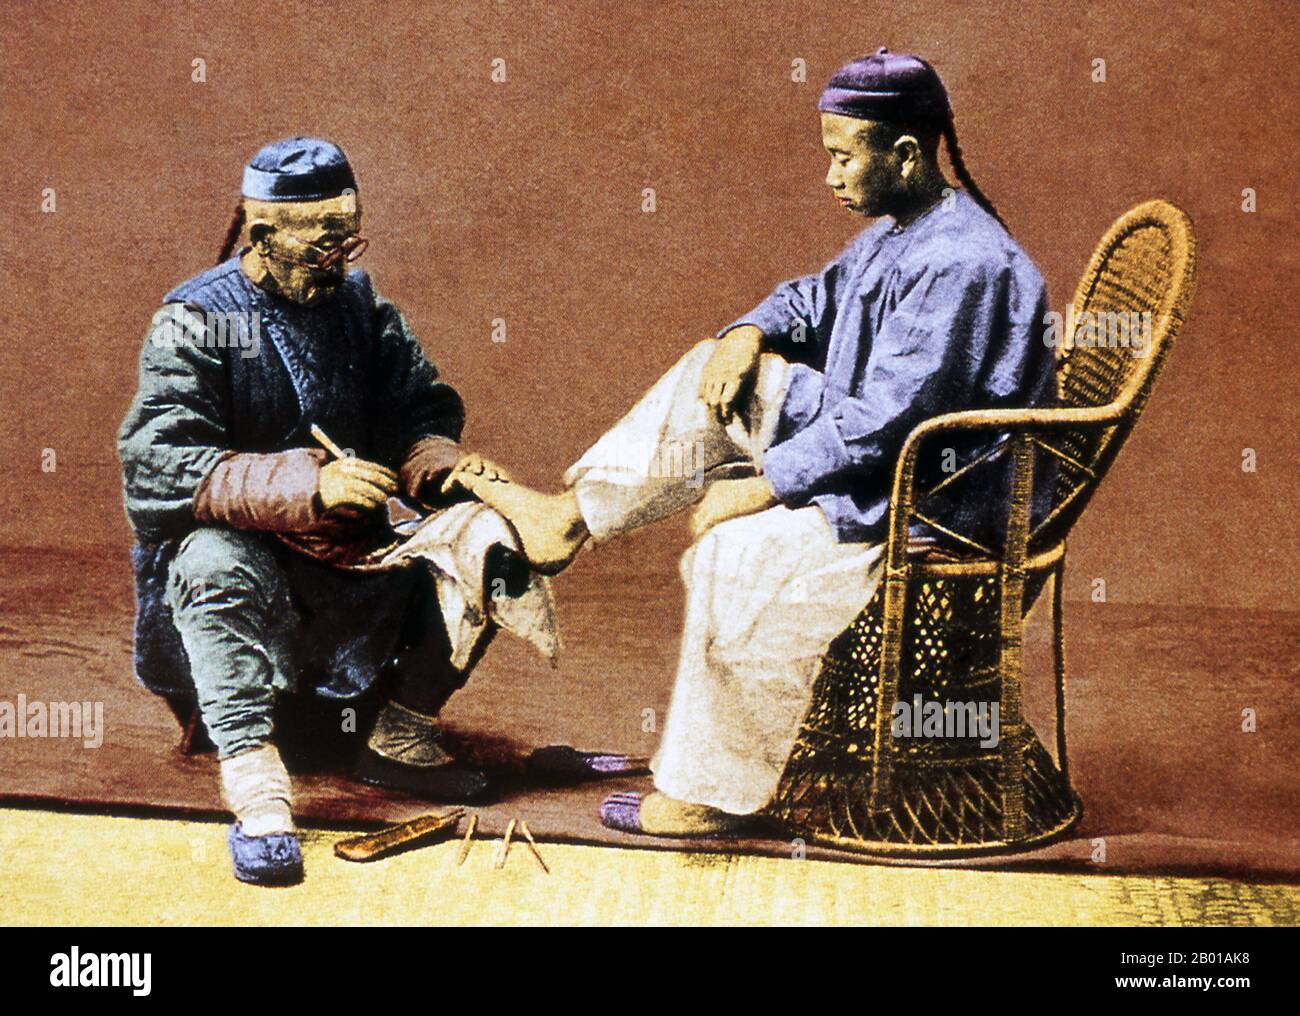 Chine: Homme recevant une pédicure, Beijing, c. 1890. Dans la vieille Chine, les pédicures - et les pédicuristes - étaient souvent mobiles. Le terme chinois pour la pédicure est 'xiu jiao di'. Une pédicure est une façon d'améliorer l'apparence des pieds et de leurs ongles. Il offre un service similaire à une manucure. Le mot pédicure fait référence au traitement cosmétique superficiel des pieds et des orteils et vient des mots latins Pedis, qui signifie « du pied », et cura, qui signifie « soin ». Banque D'Images